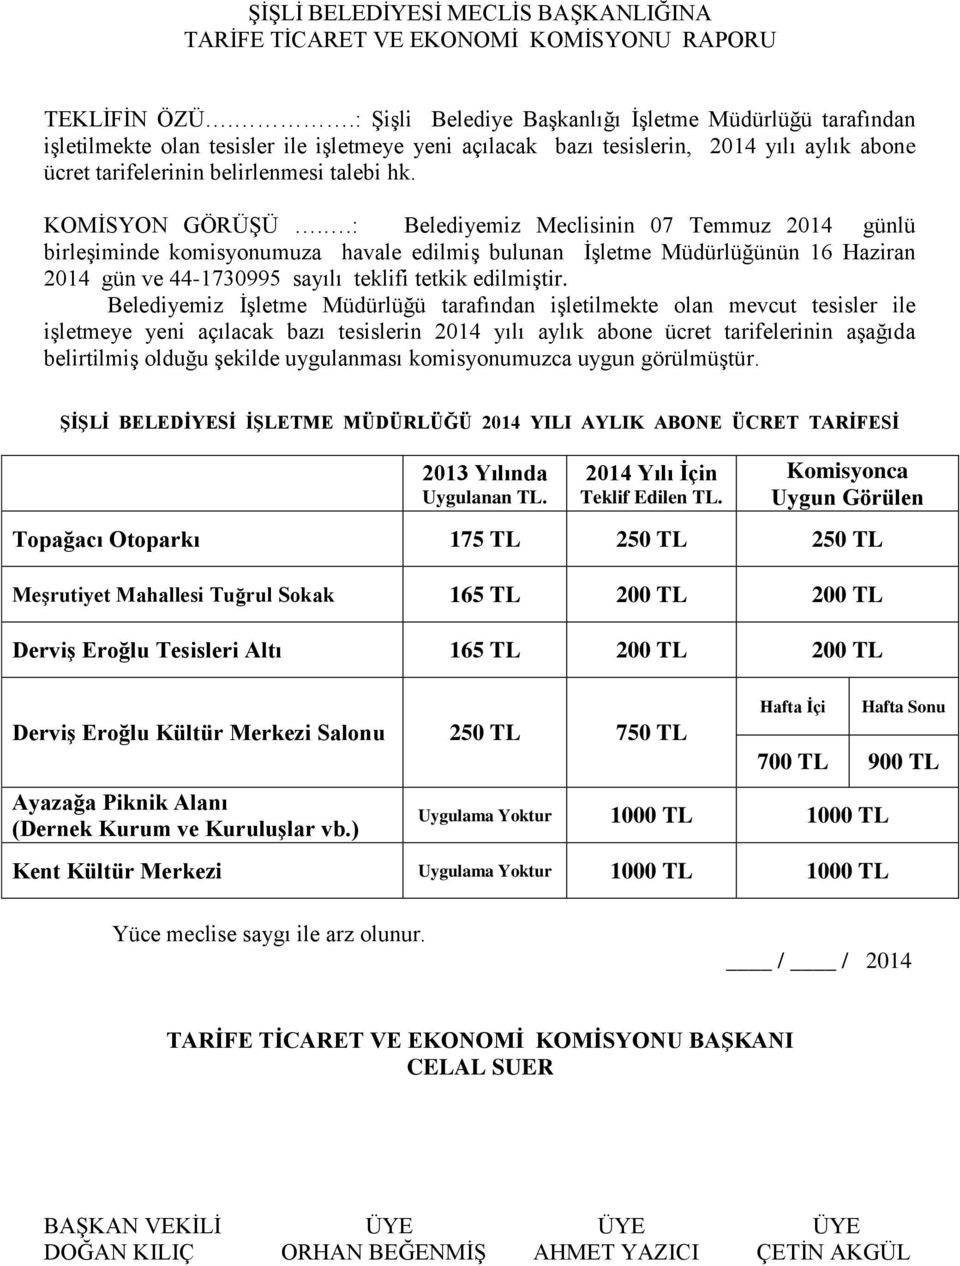 KOMİSYON GÖRÜŞÜ..: Belediyemiz Meclisinin 07 Temmuz 2014 günlü birleşiminde komisyonumuza havale edilmiş bulunan İşletme Müdürlüğünün 16 Haziran 2014 gün ve 44-1730995 sayılı teklifi tetkik edilmiştir.